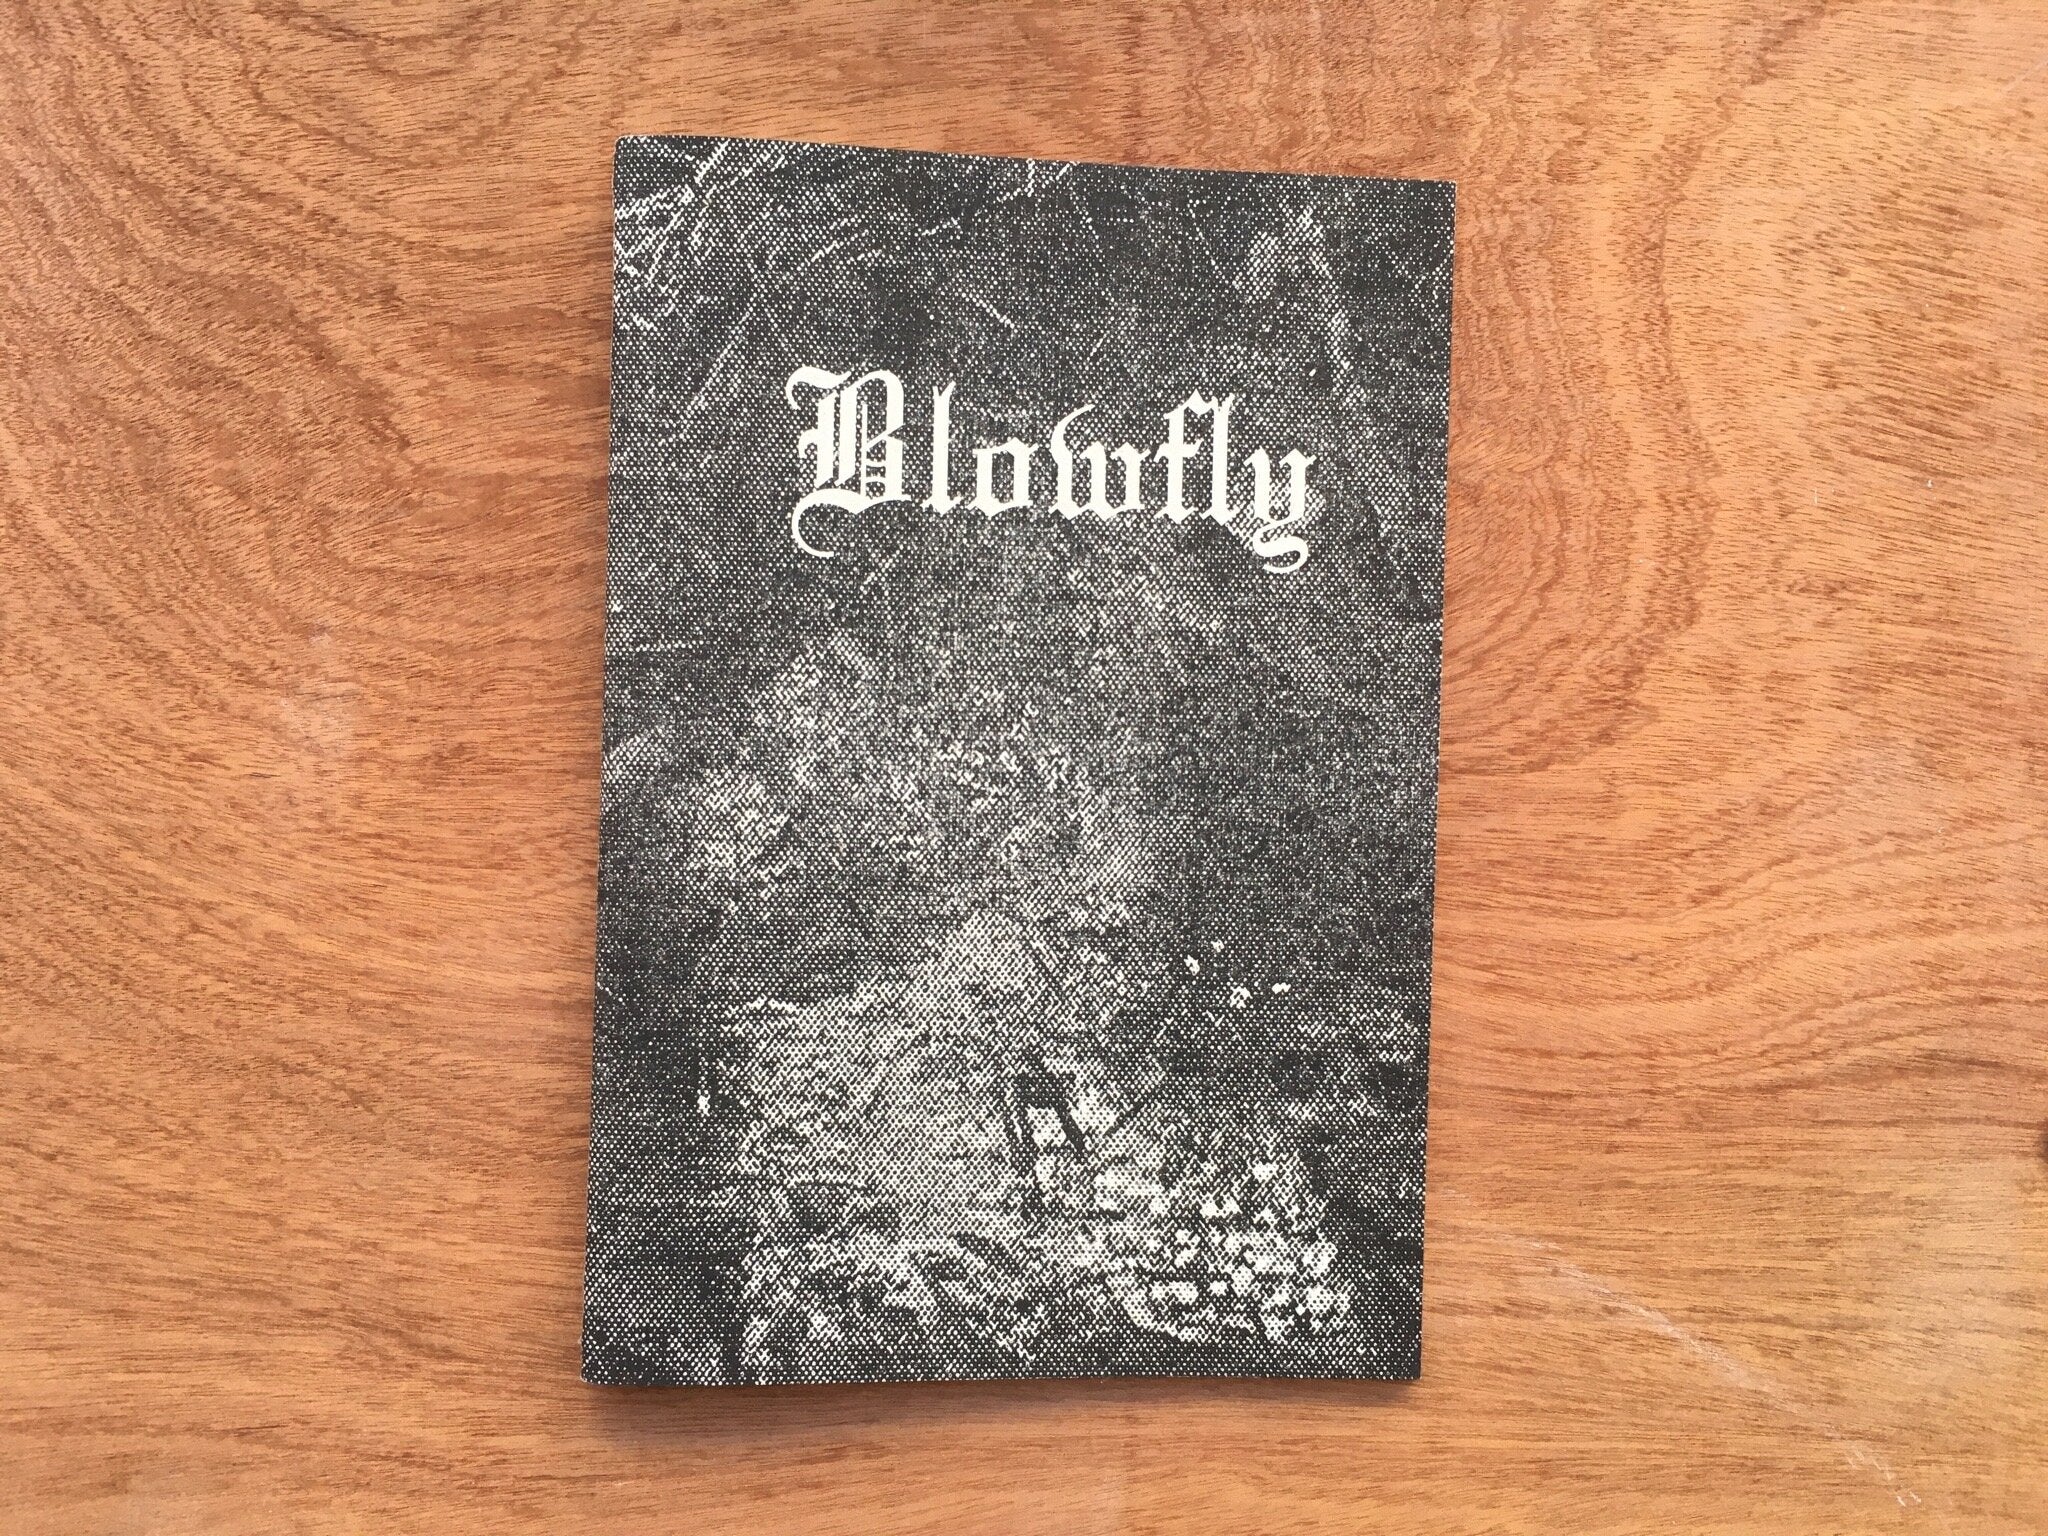 BLOWFLY VOLUME 1 by Wylliam Rowan Wold & Earlier